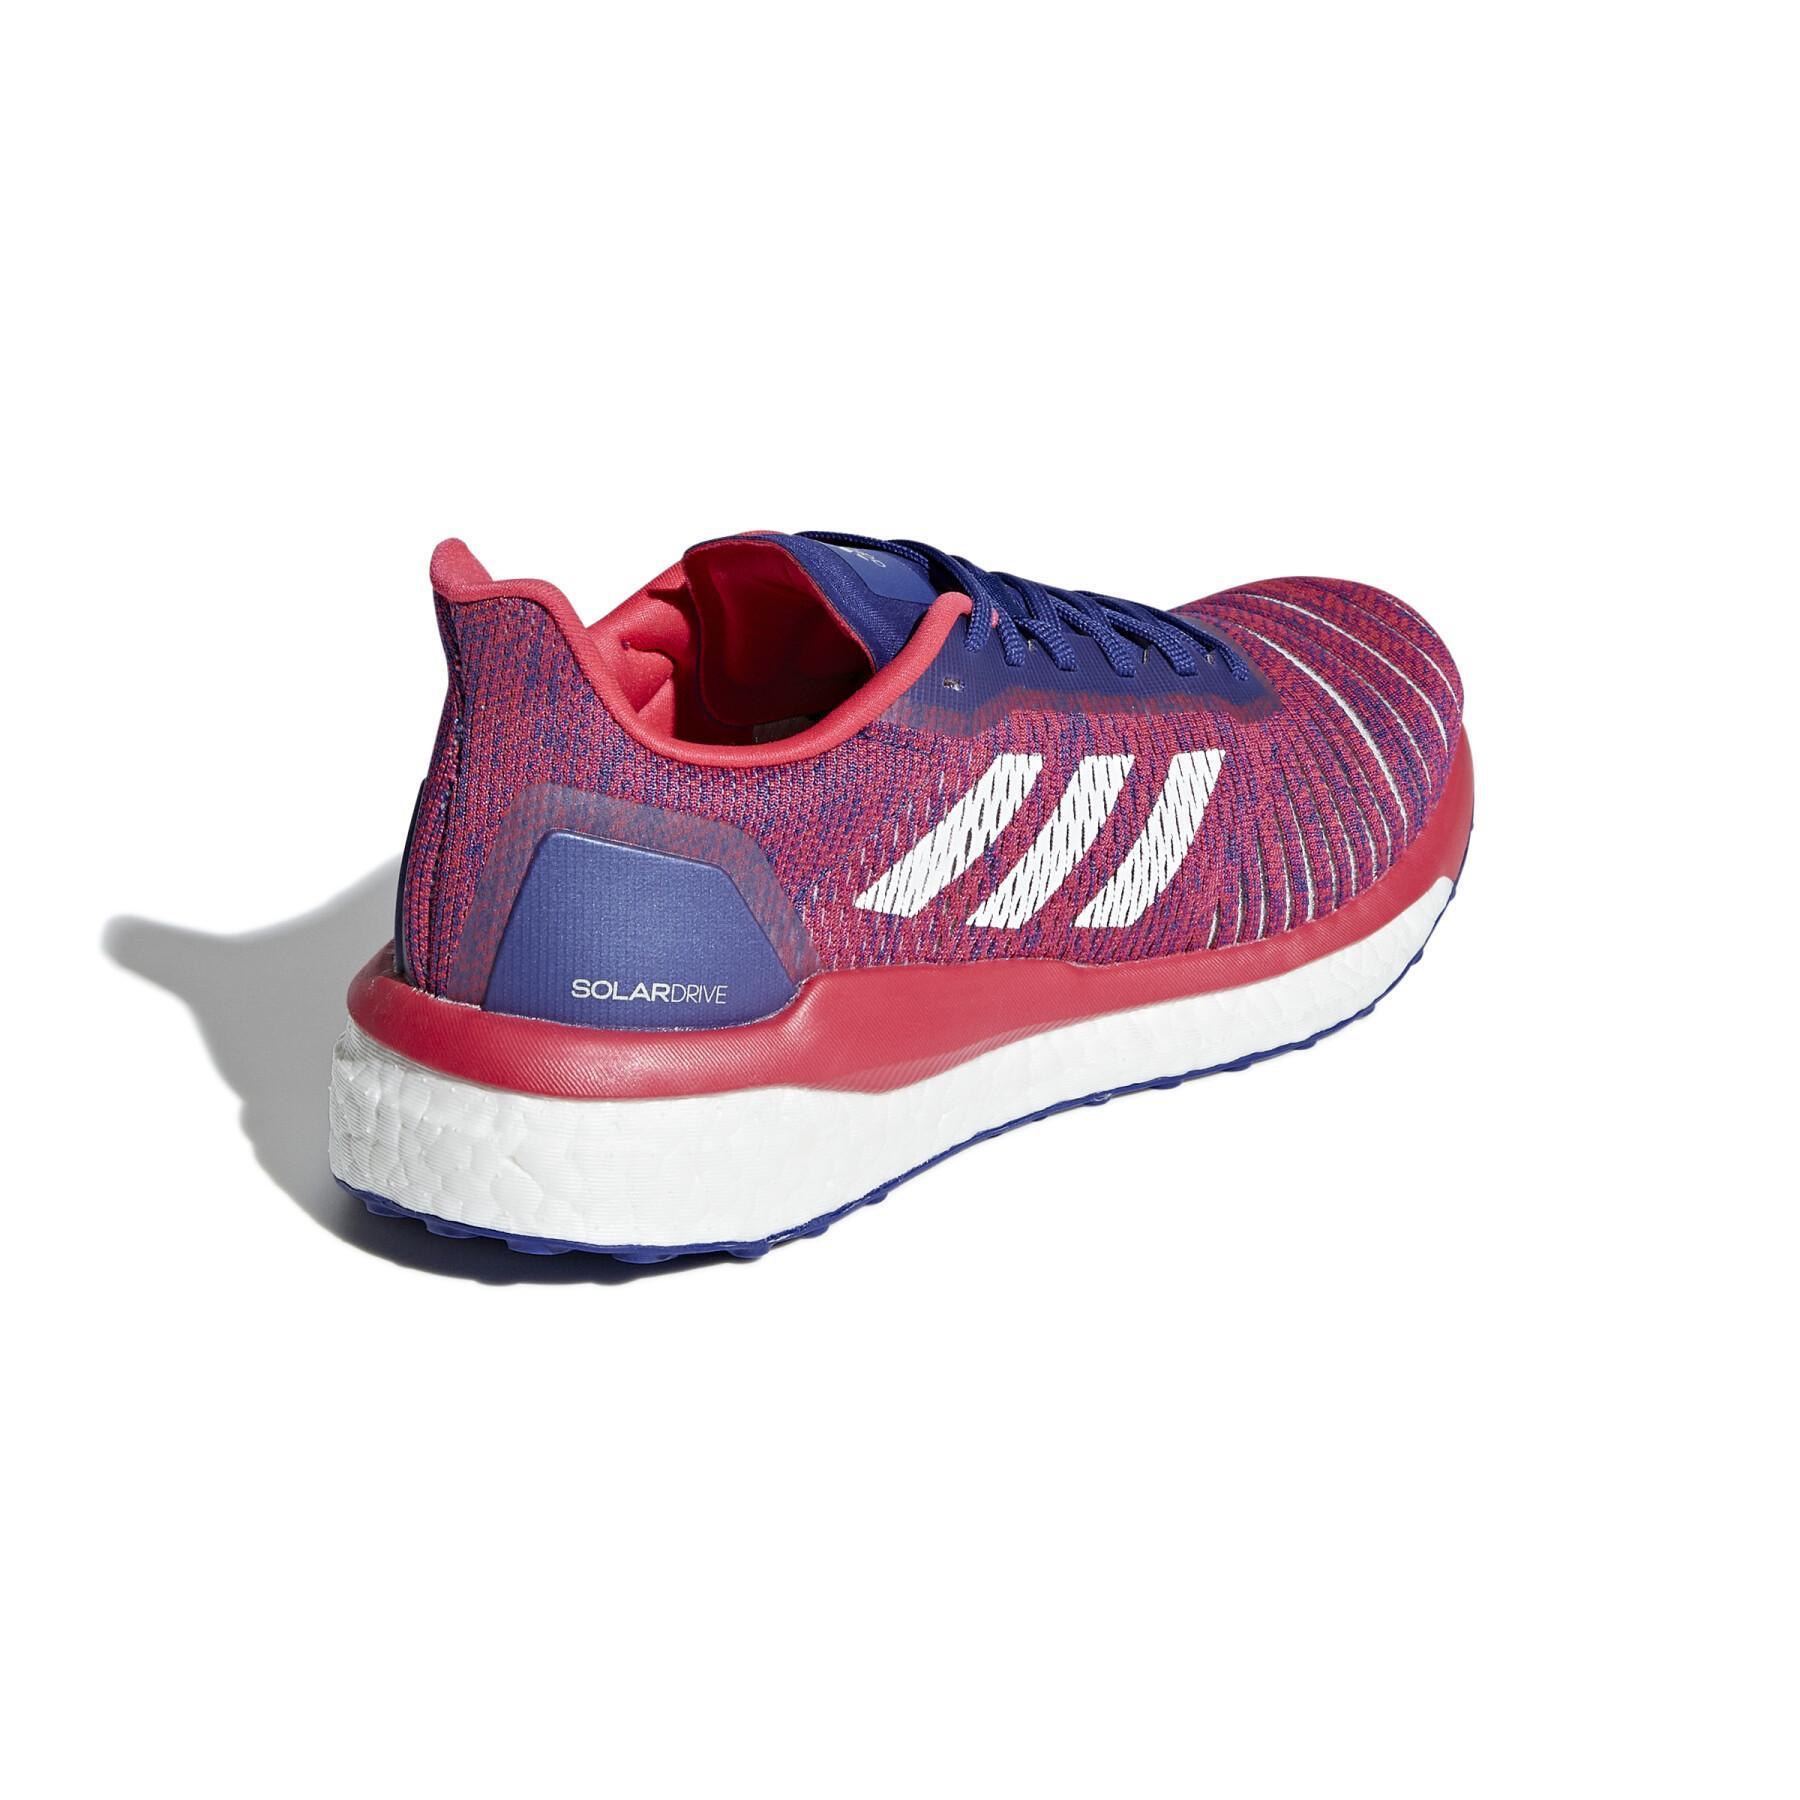 Chaussures de running femme adidas Solardrive